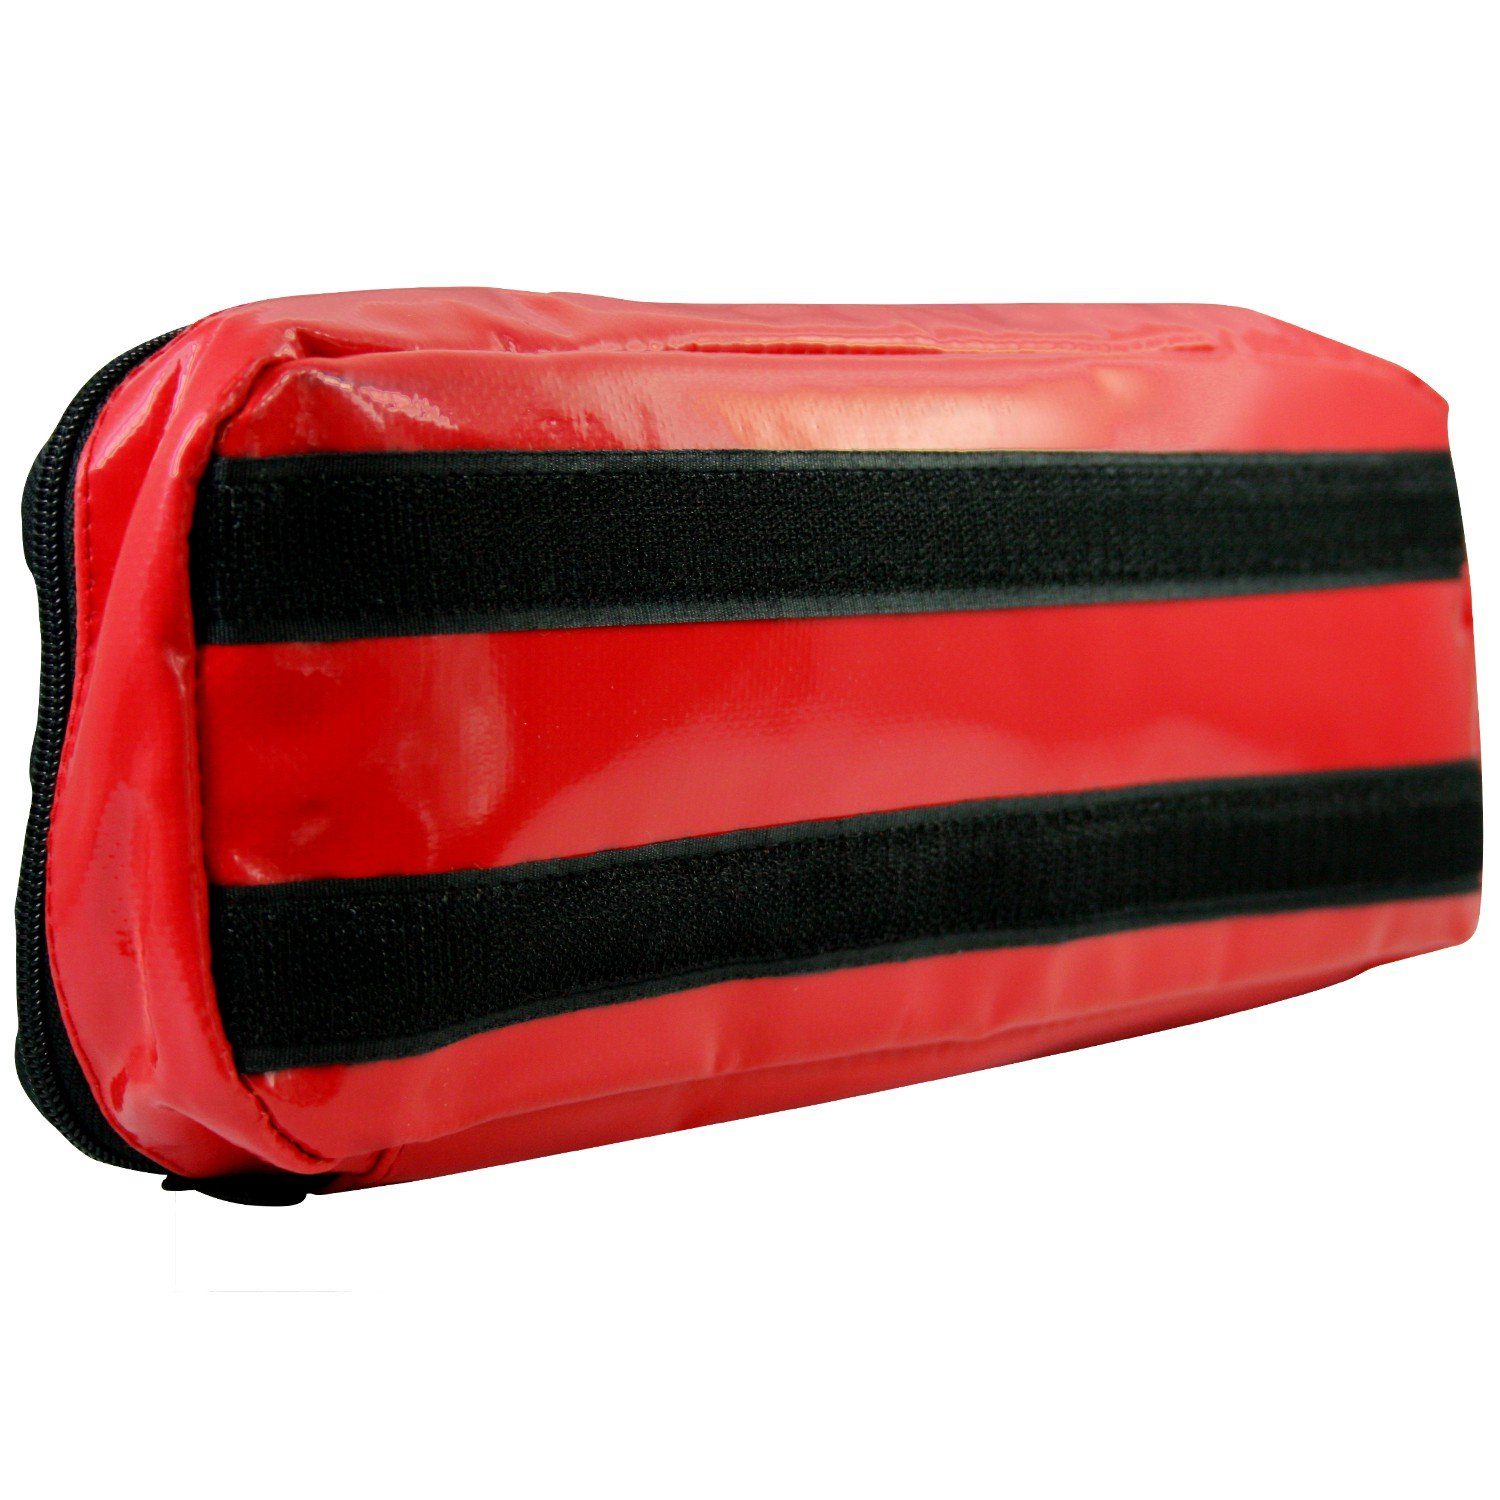 mit x für Arzttasche 12 Modultasche Klett Plane Notfallrucksack Rot SANISMART 5 cm 32 x